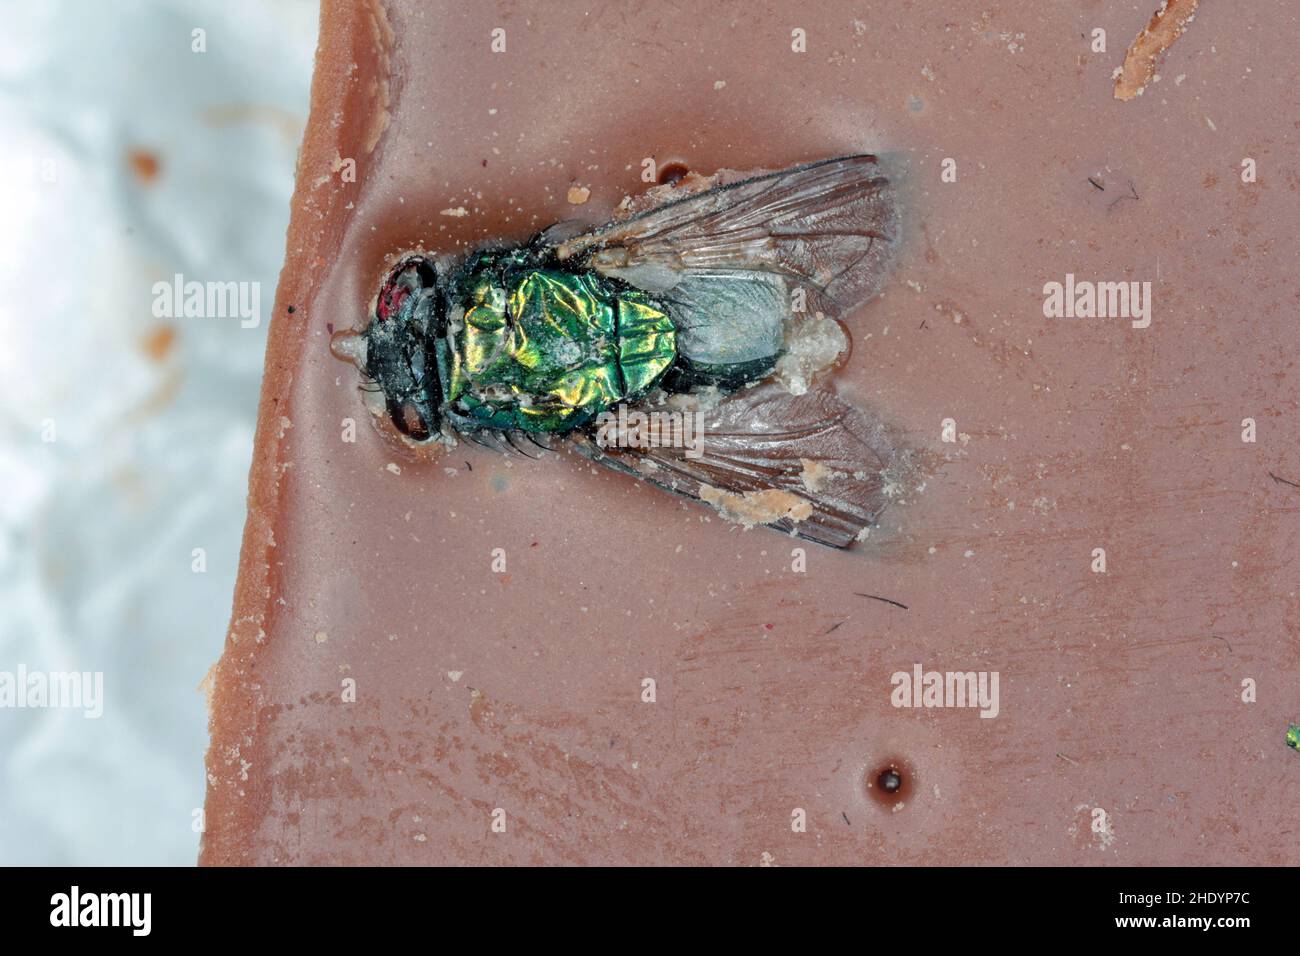 Eine Fliege, die in eine Schokoladenriegel eingemischt wurde. Insekt in Lebensmitteln. Stockfoto